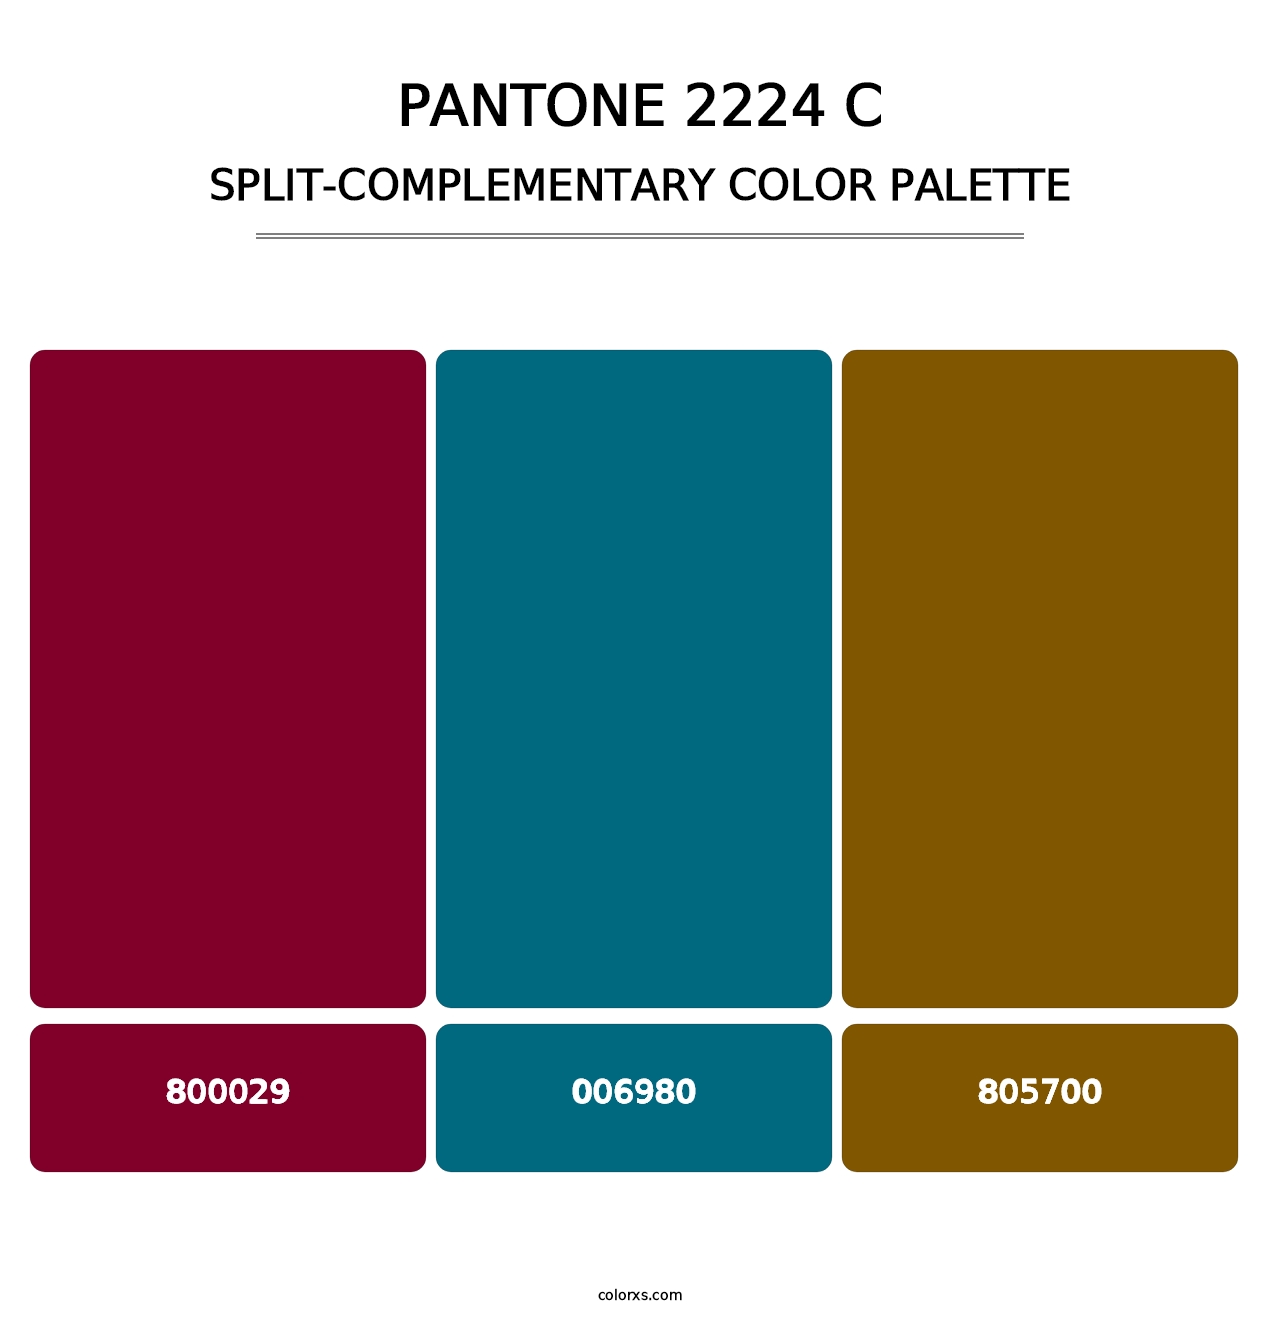 PANTONE 2224 C - Split-Complementary Color Palette